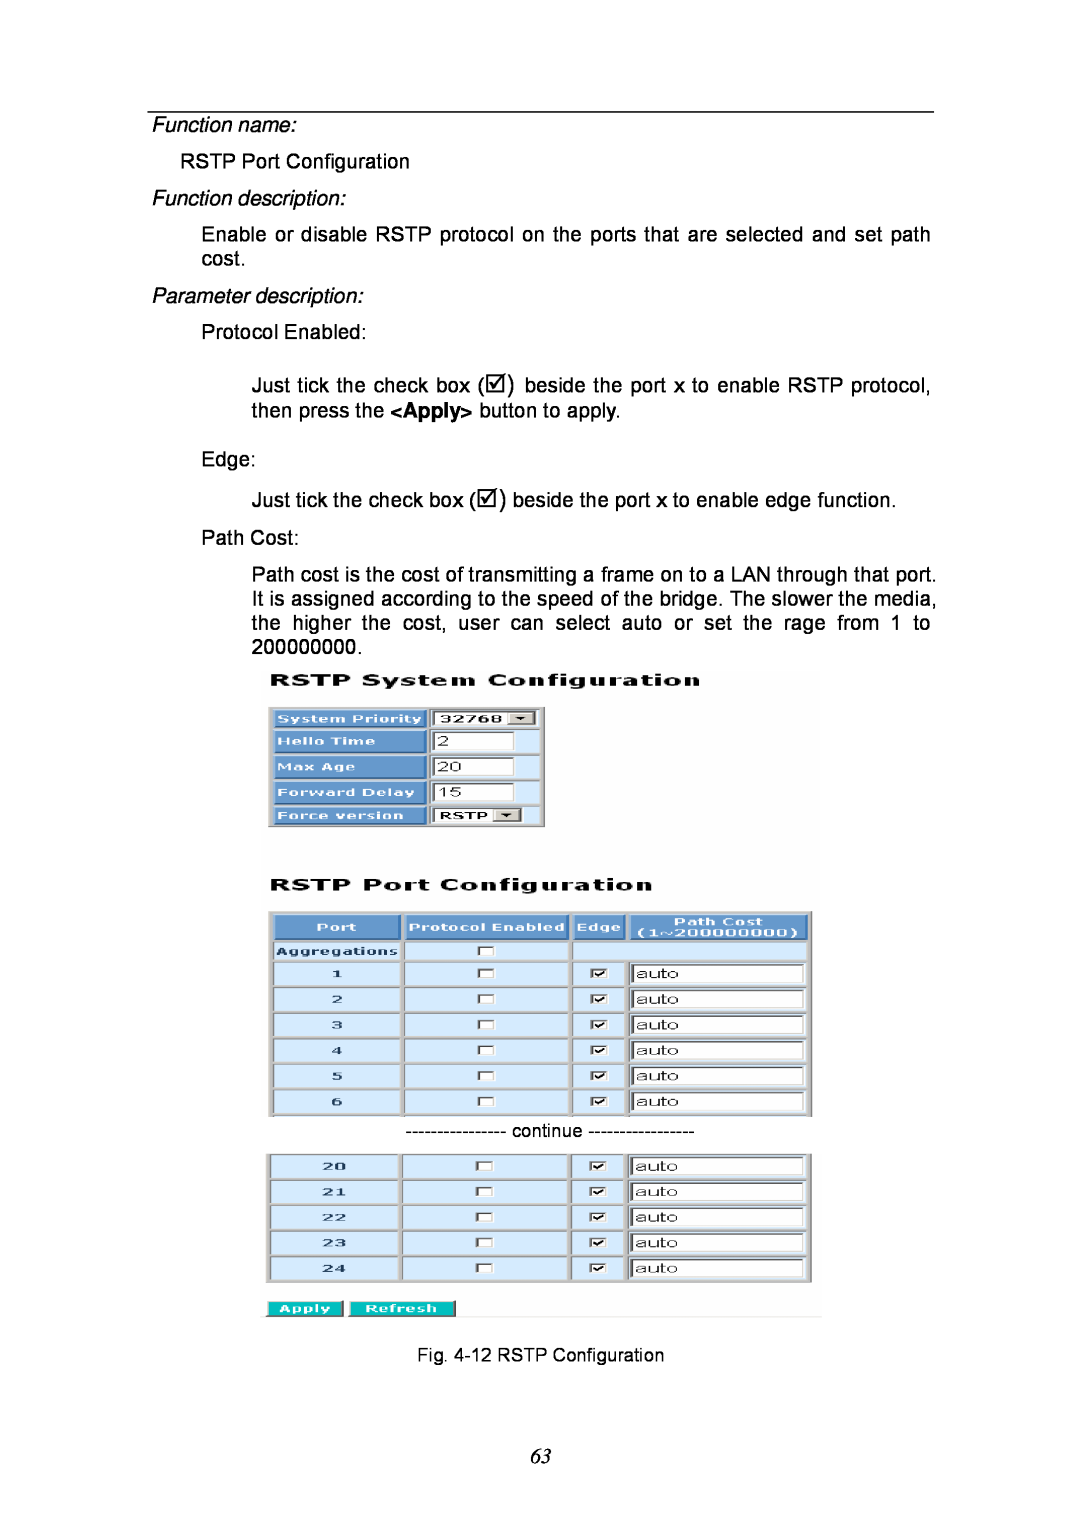 KTI Networks KGS-2404 manual Function name, Function description, Parameter description, continue -12 RSTP Configuration 